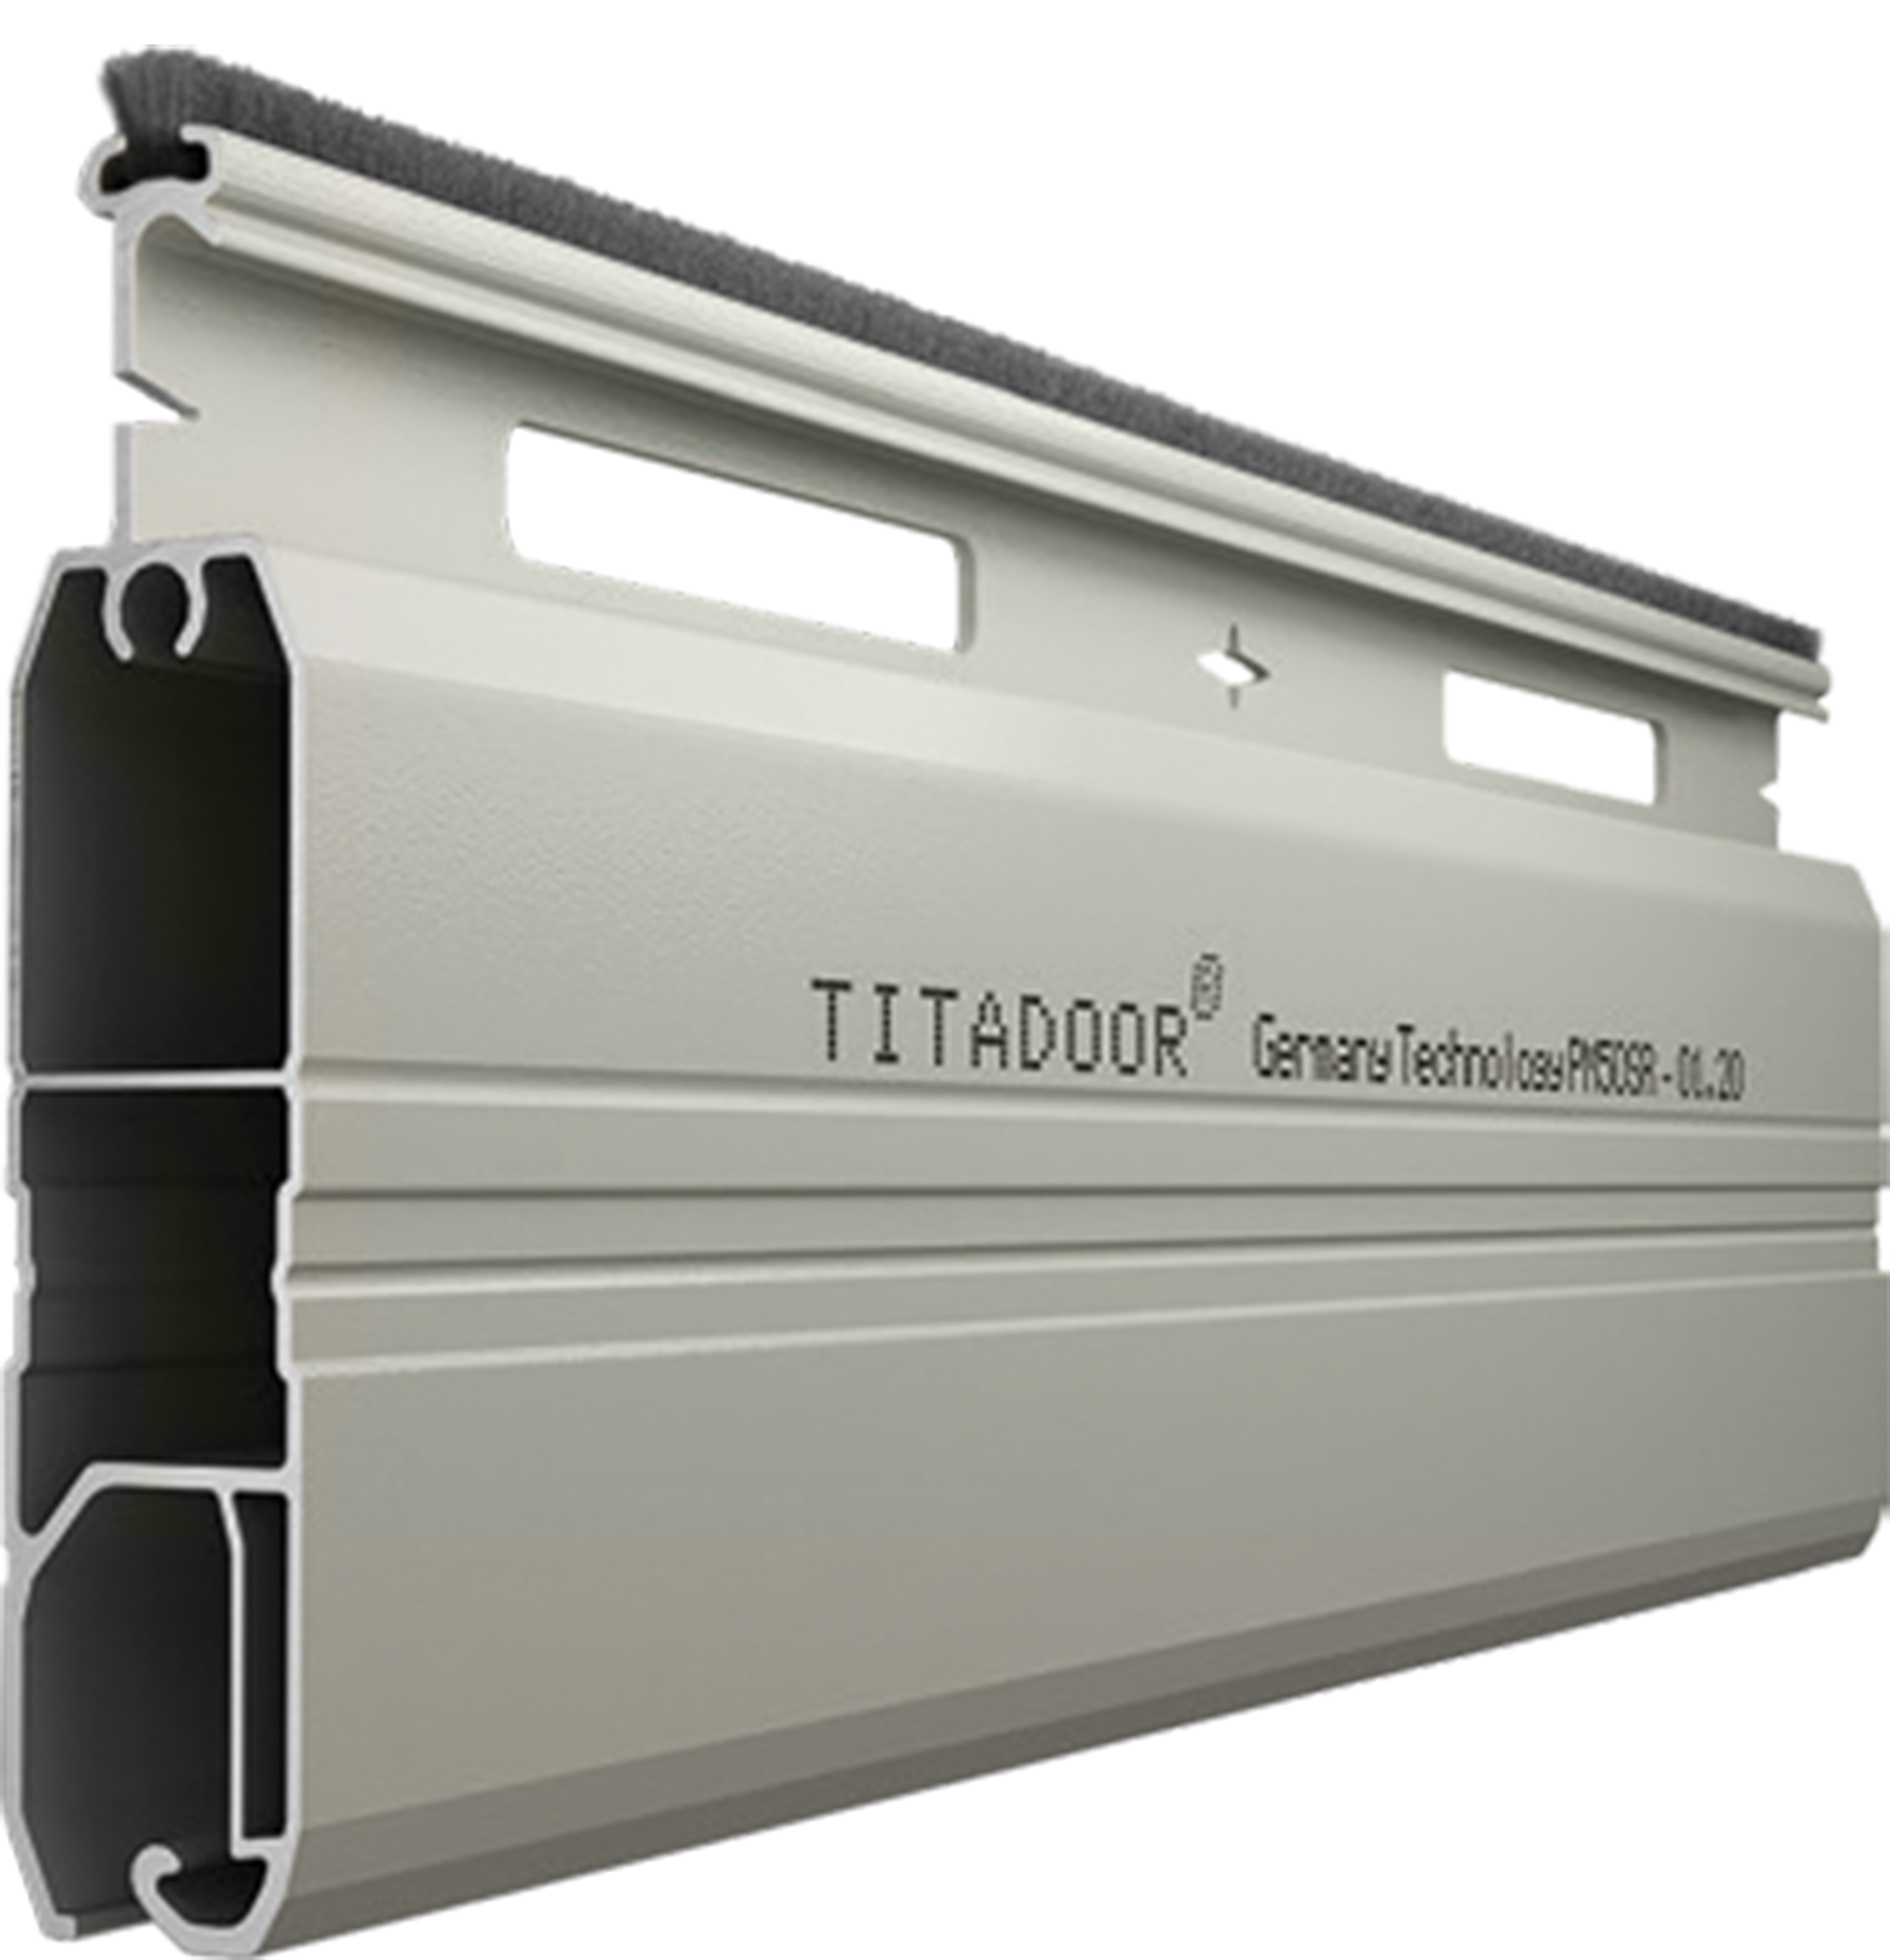 Cửa cuốn Titadoor PM-49S có thiết kế tinh tế